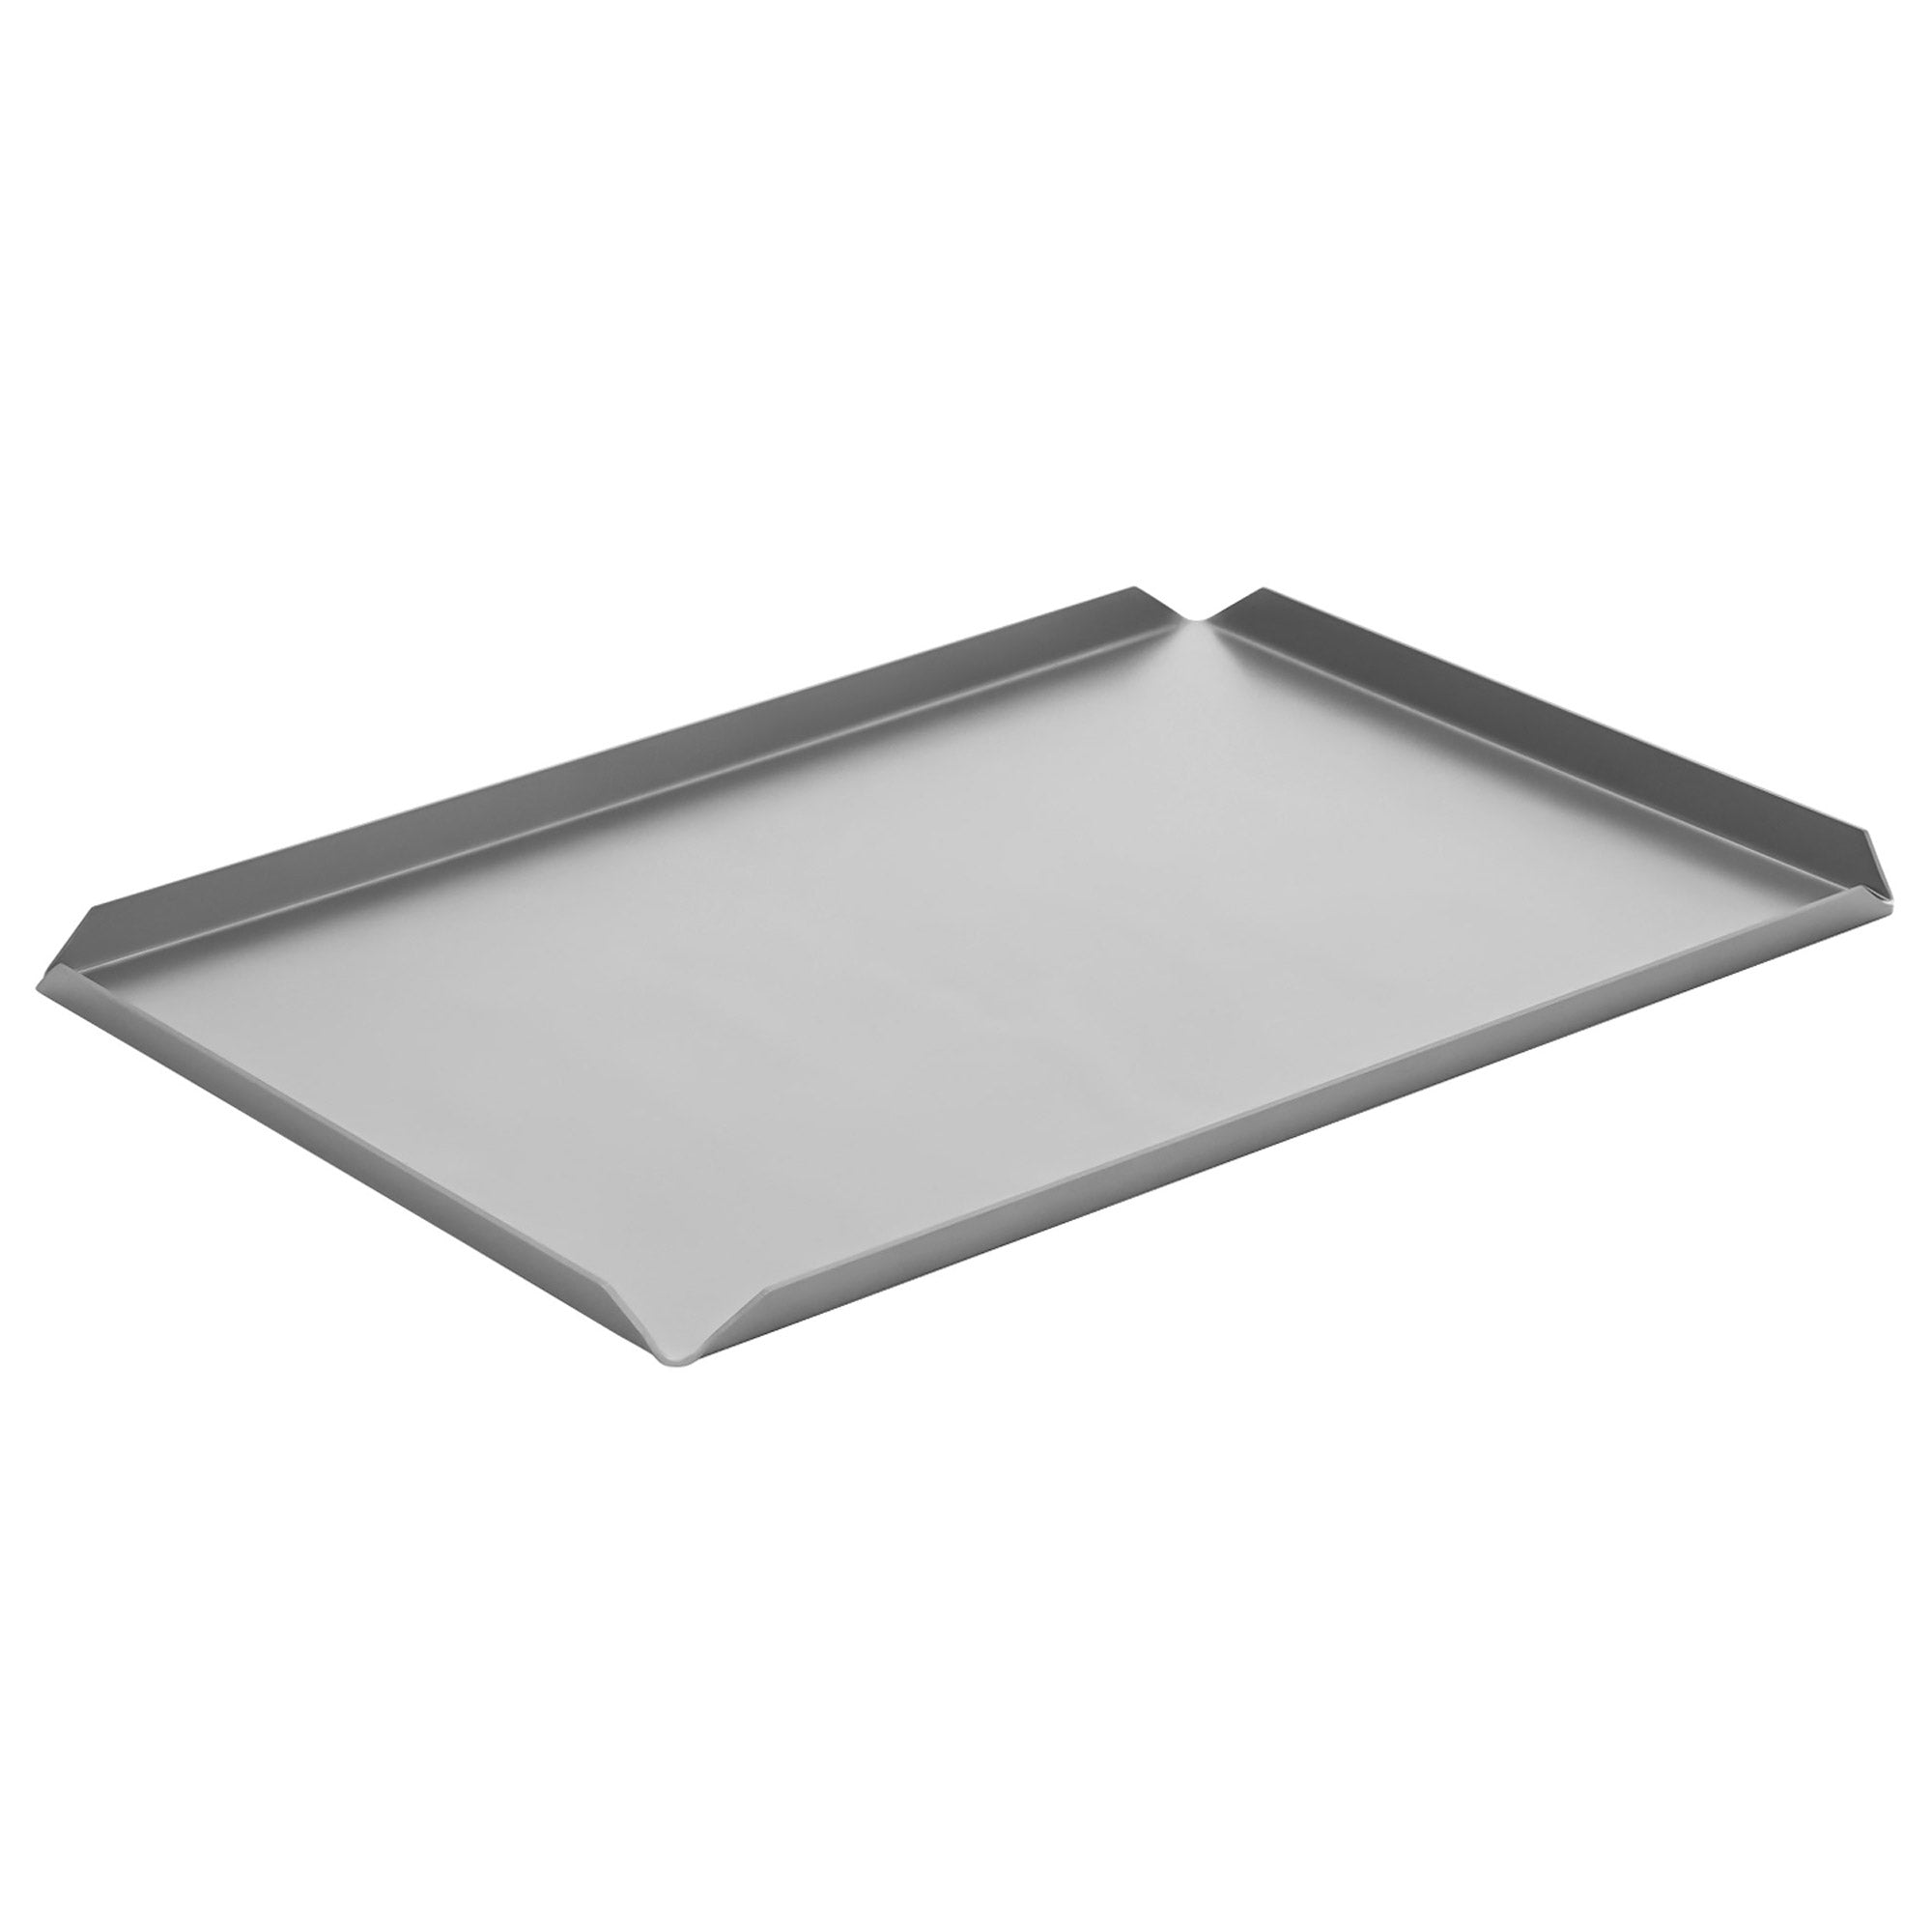 (5 бр.) Алуминиева табелка за сладкарски изделия и презентации - 400 x 100 x 10 mm - алуминий